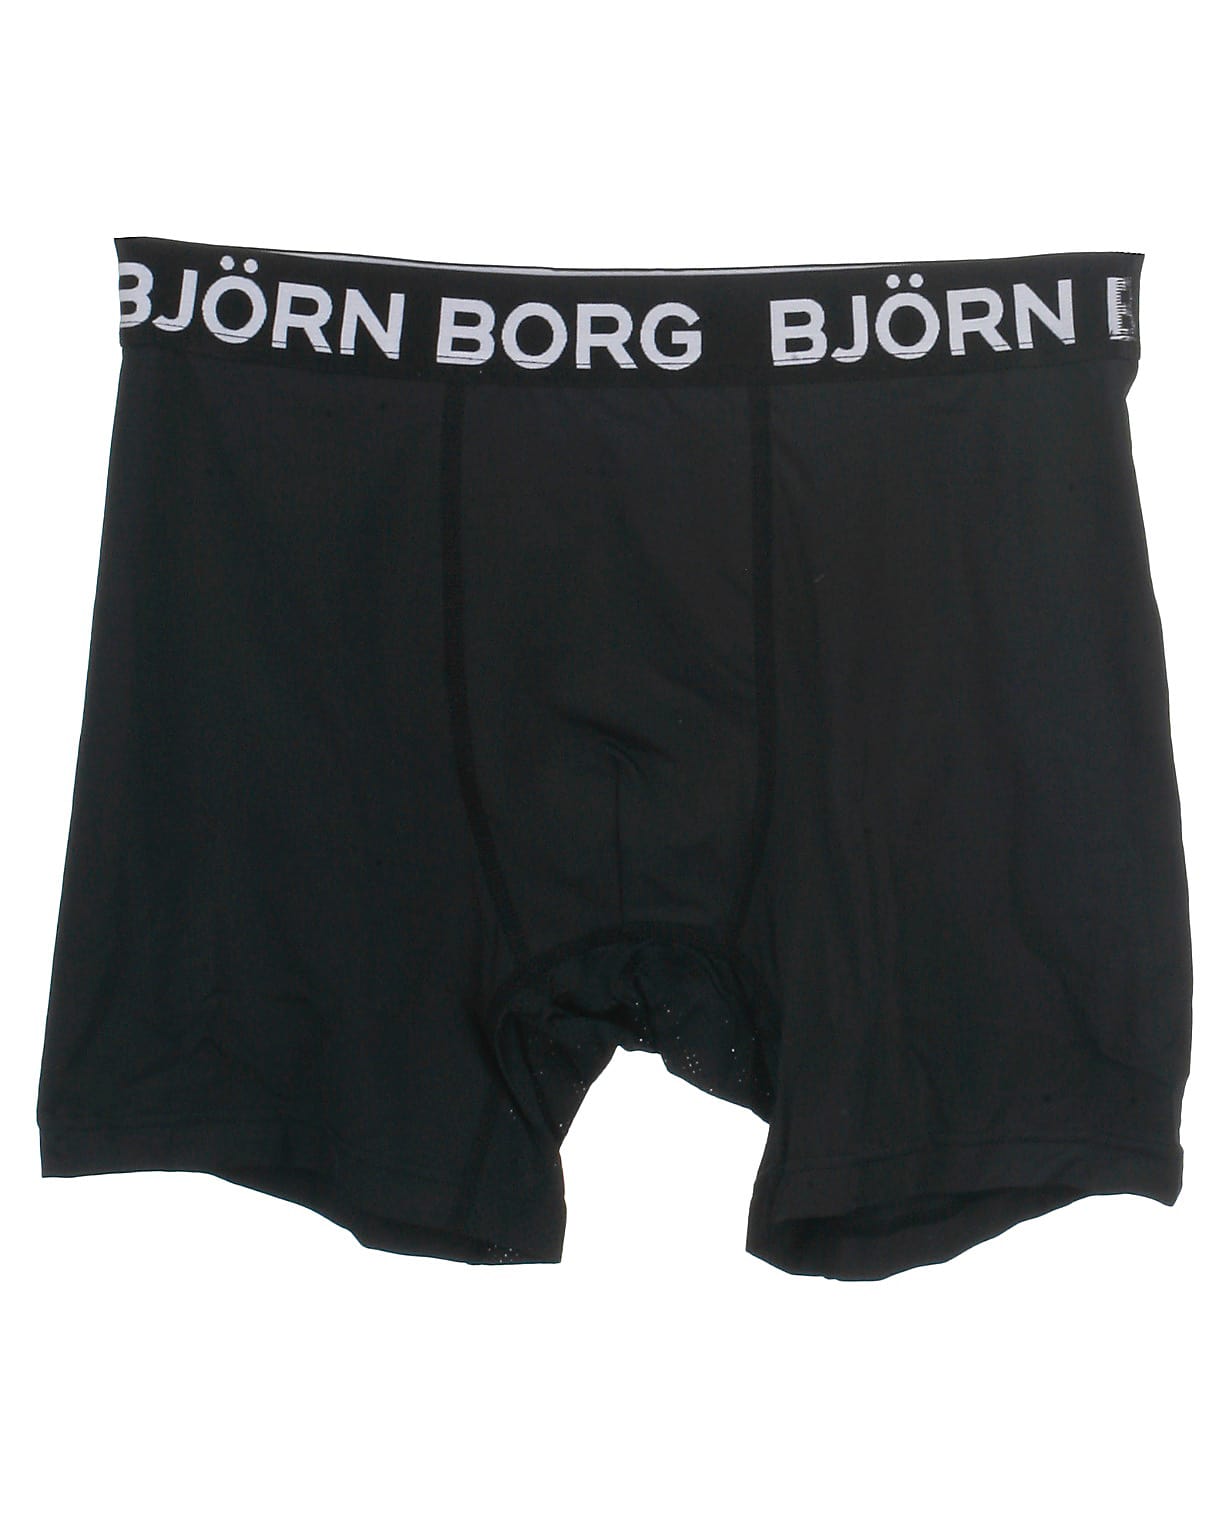 Björn Borg tights, sort, Performance - 164,XS+,XS